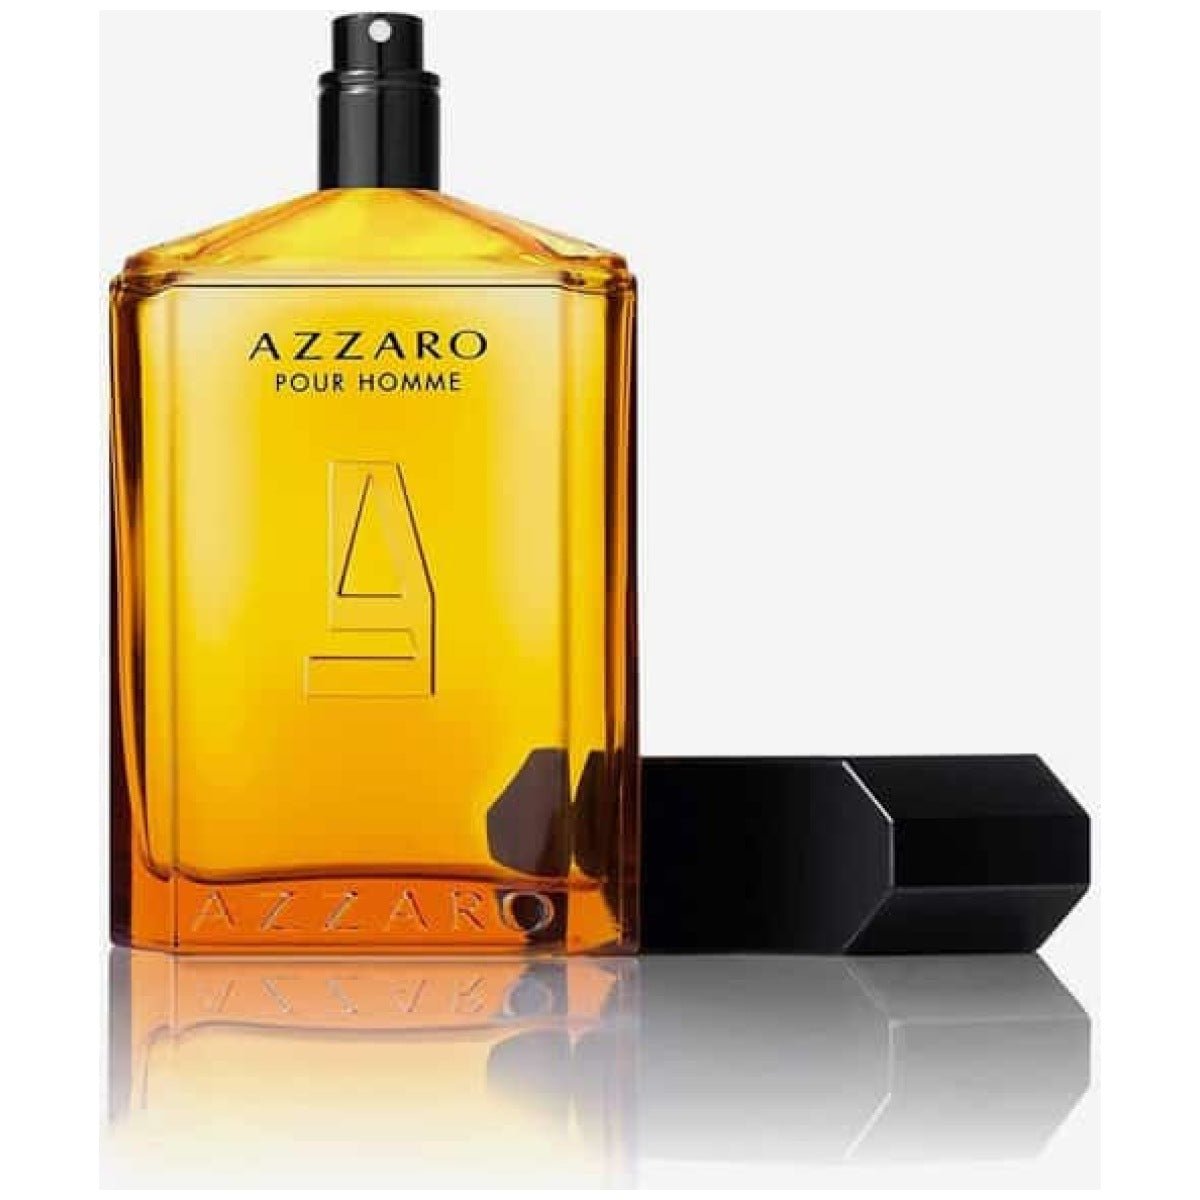 Azzaro Pour Homme EDT Hair & Body Shampoo Travel Set | My Perfume Shop Australia